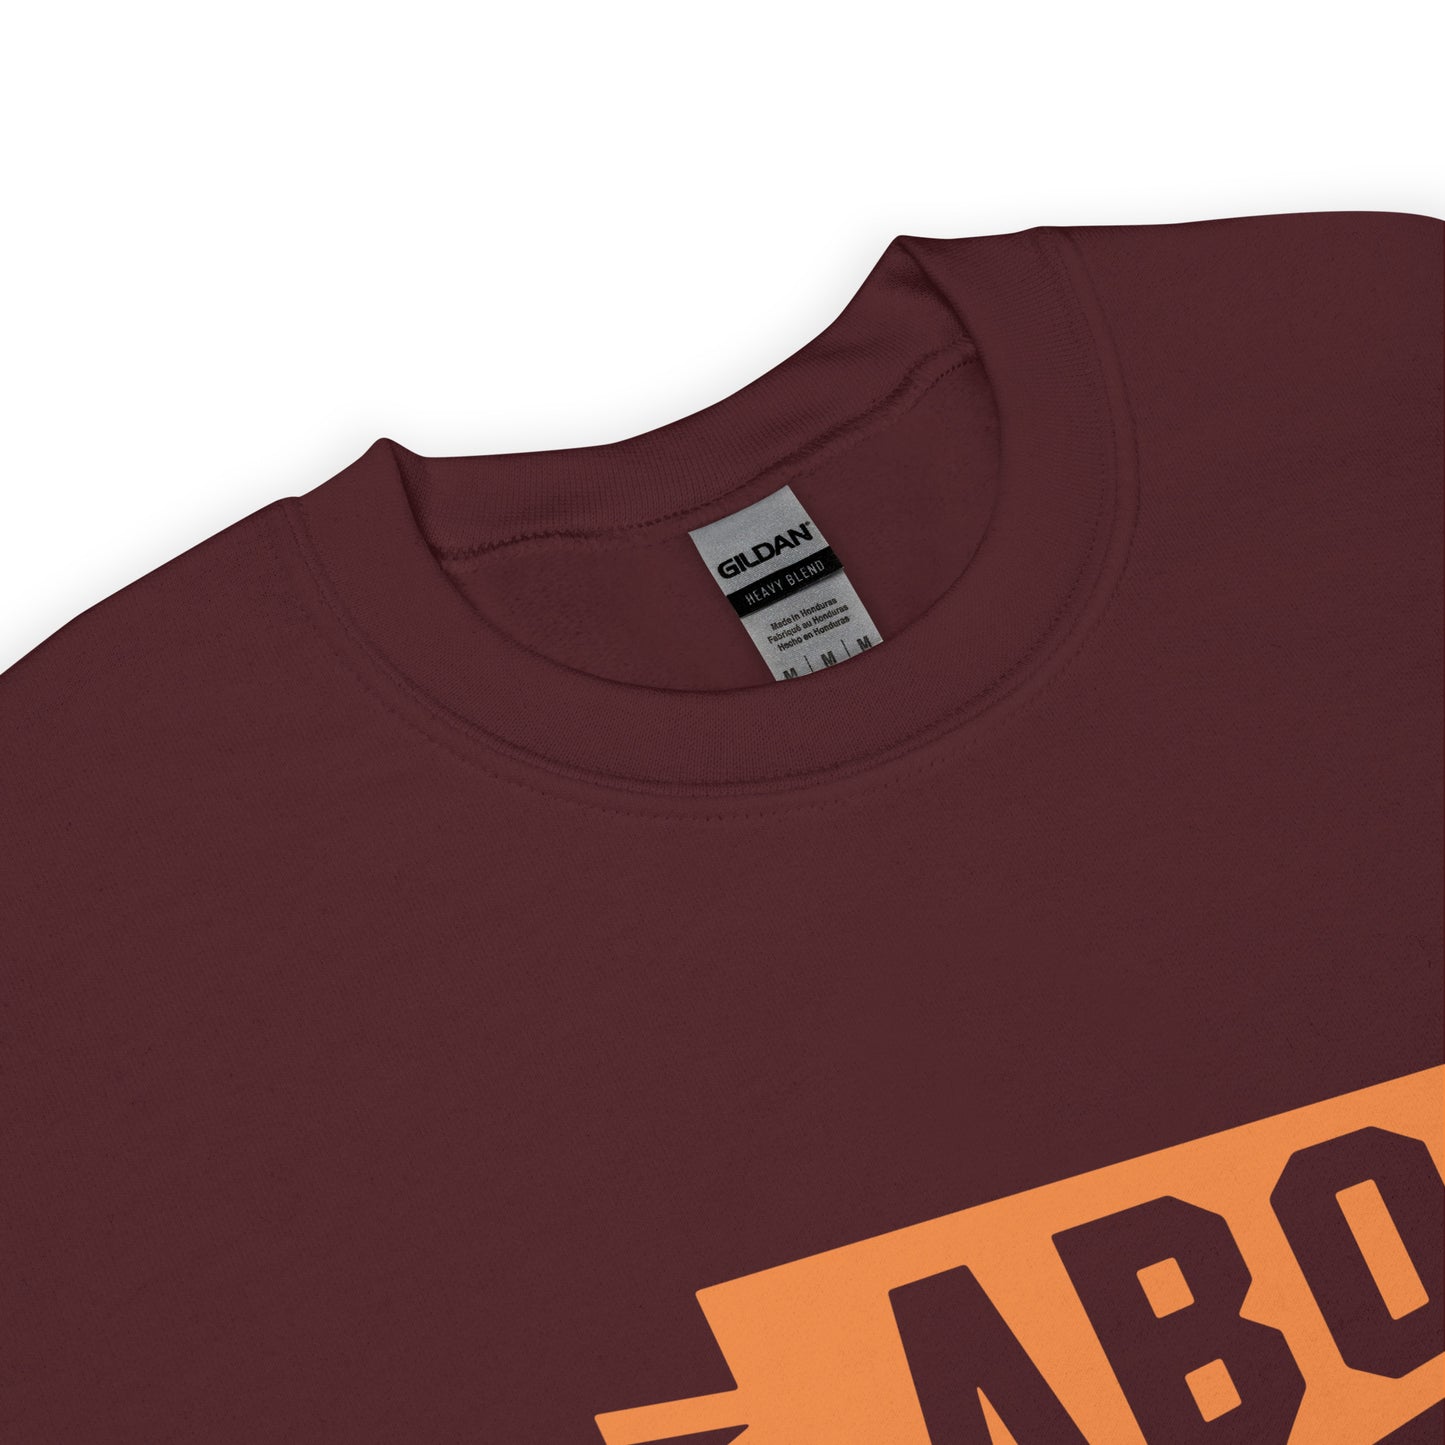 Airport Code Sweatshirt - Orange Graphic • ABQ Albuquerque • YHM Designs - Image 04